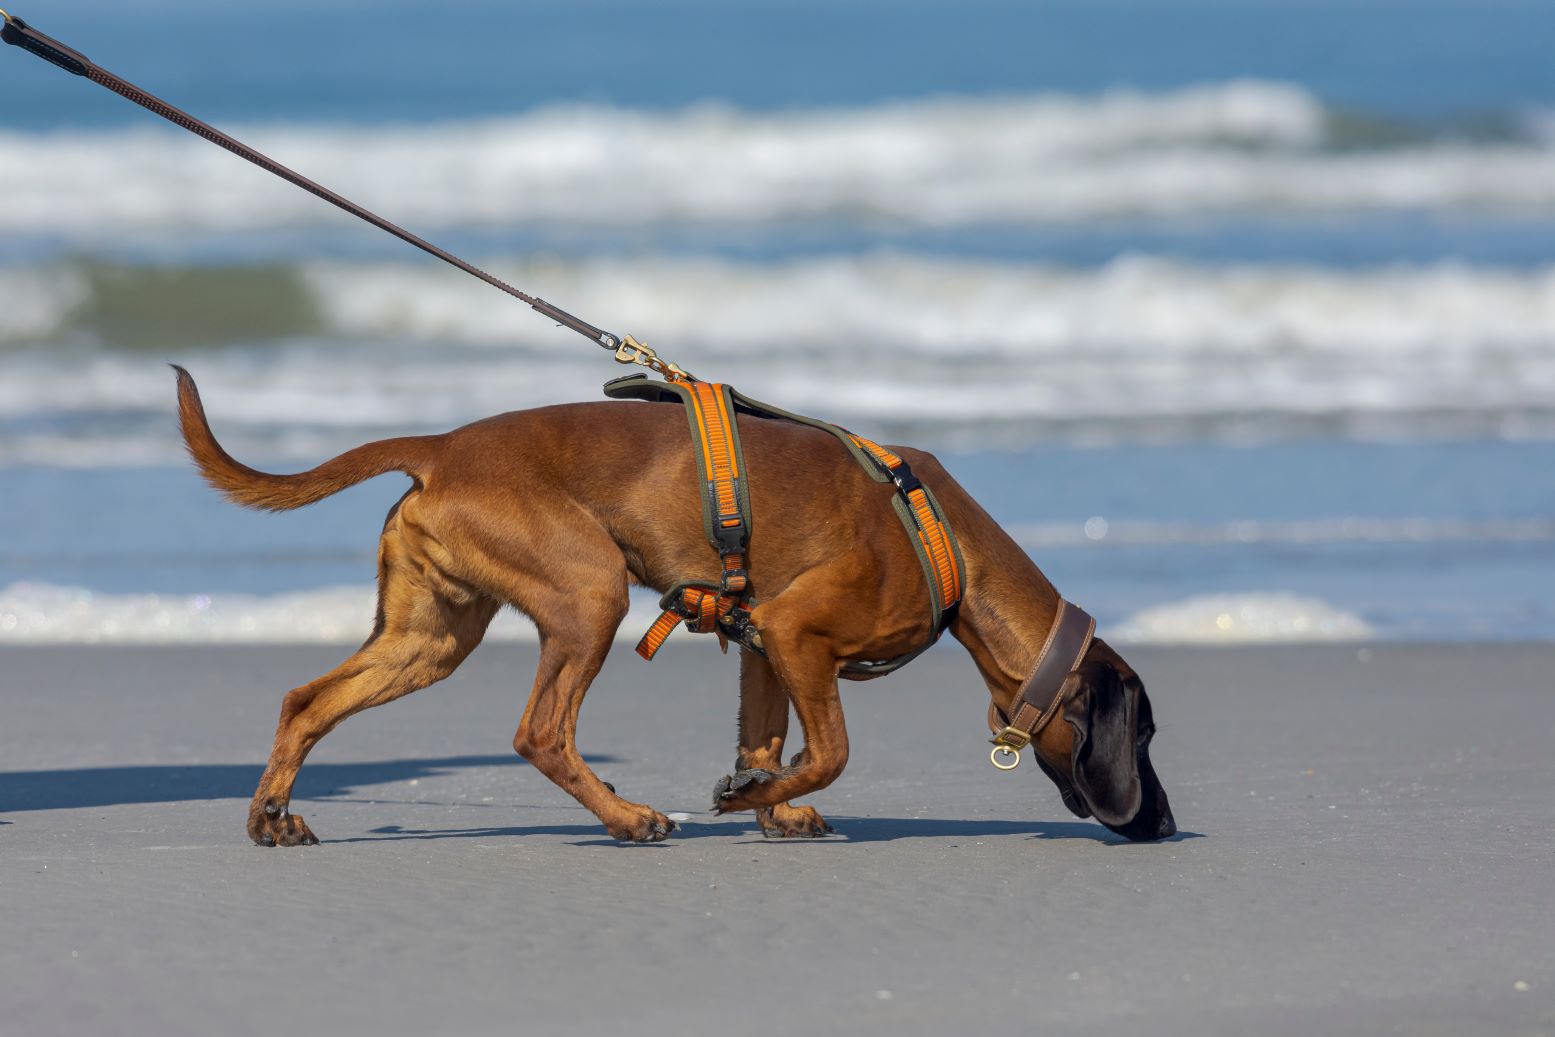 Zakaz wprowadzania psów na plaże niezgodny z prawem. Ale nie można psów puszczać wolno – trzeba prowadzić na smyczy i po nich sprzątać